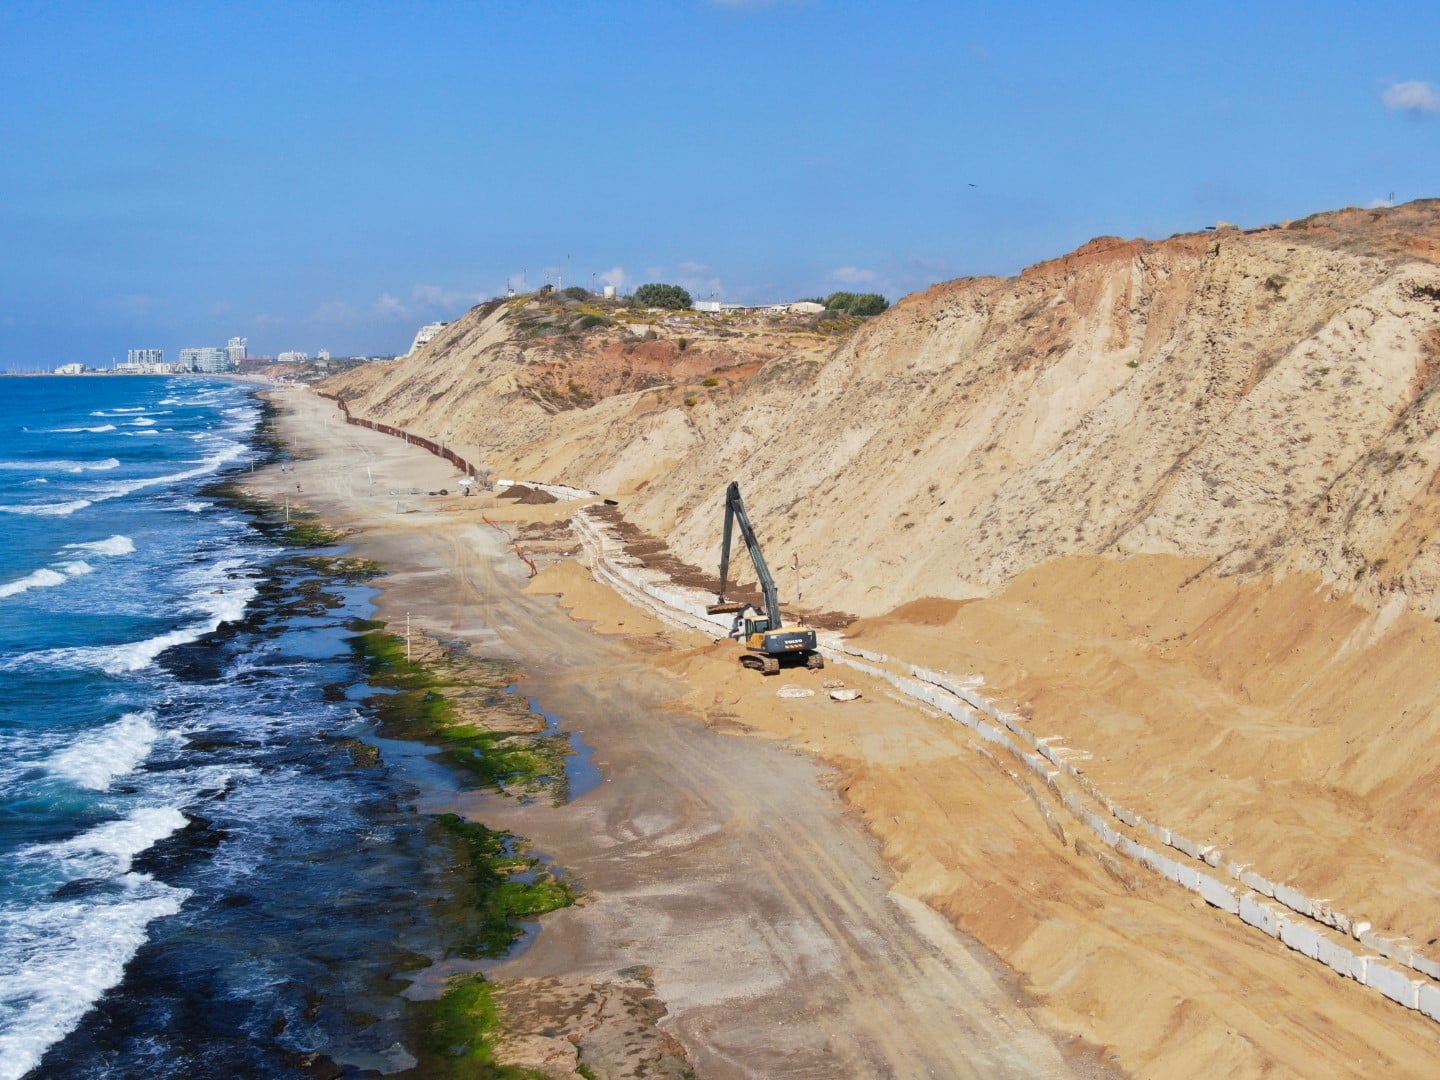 מבט אווירי של דיונת חול בחוף תל ברוך בעבודות הקמת חיזוק המדרון ובניית קיר הים.